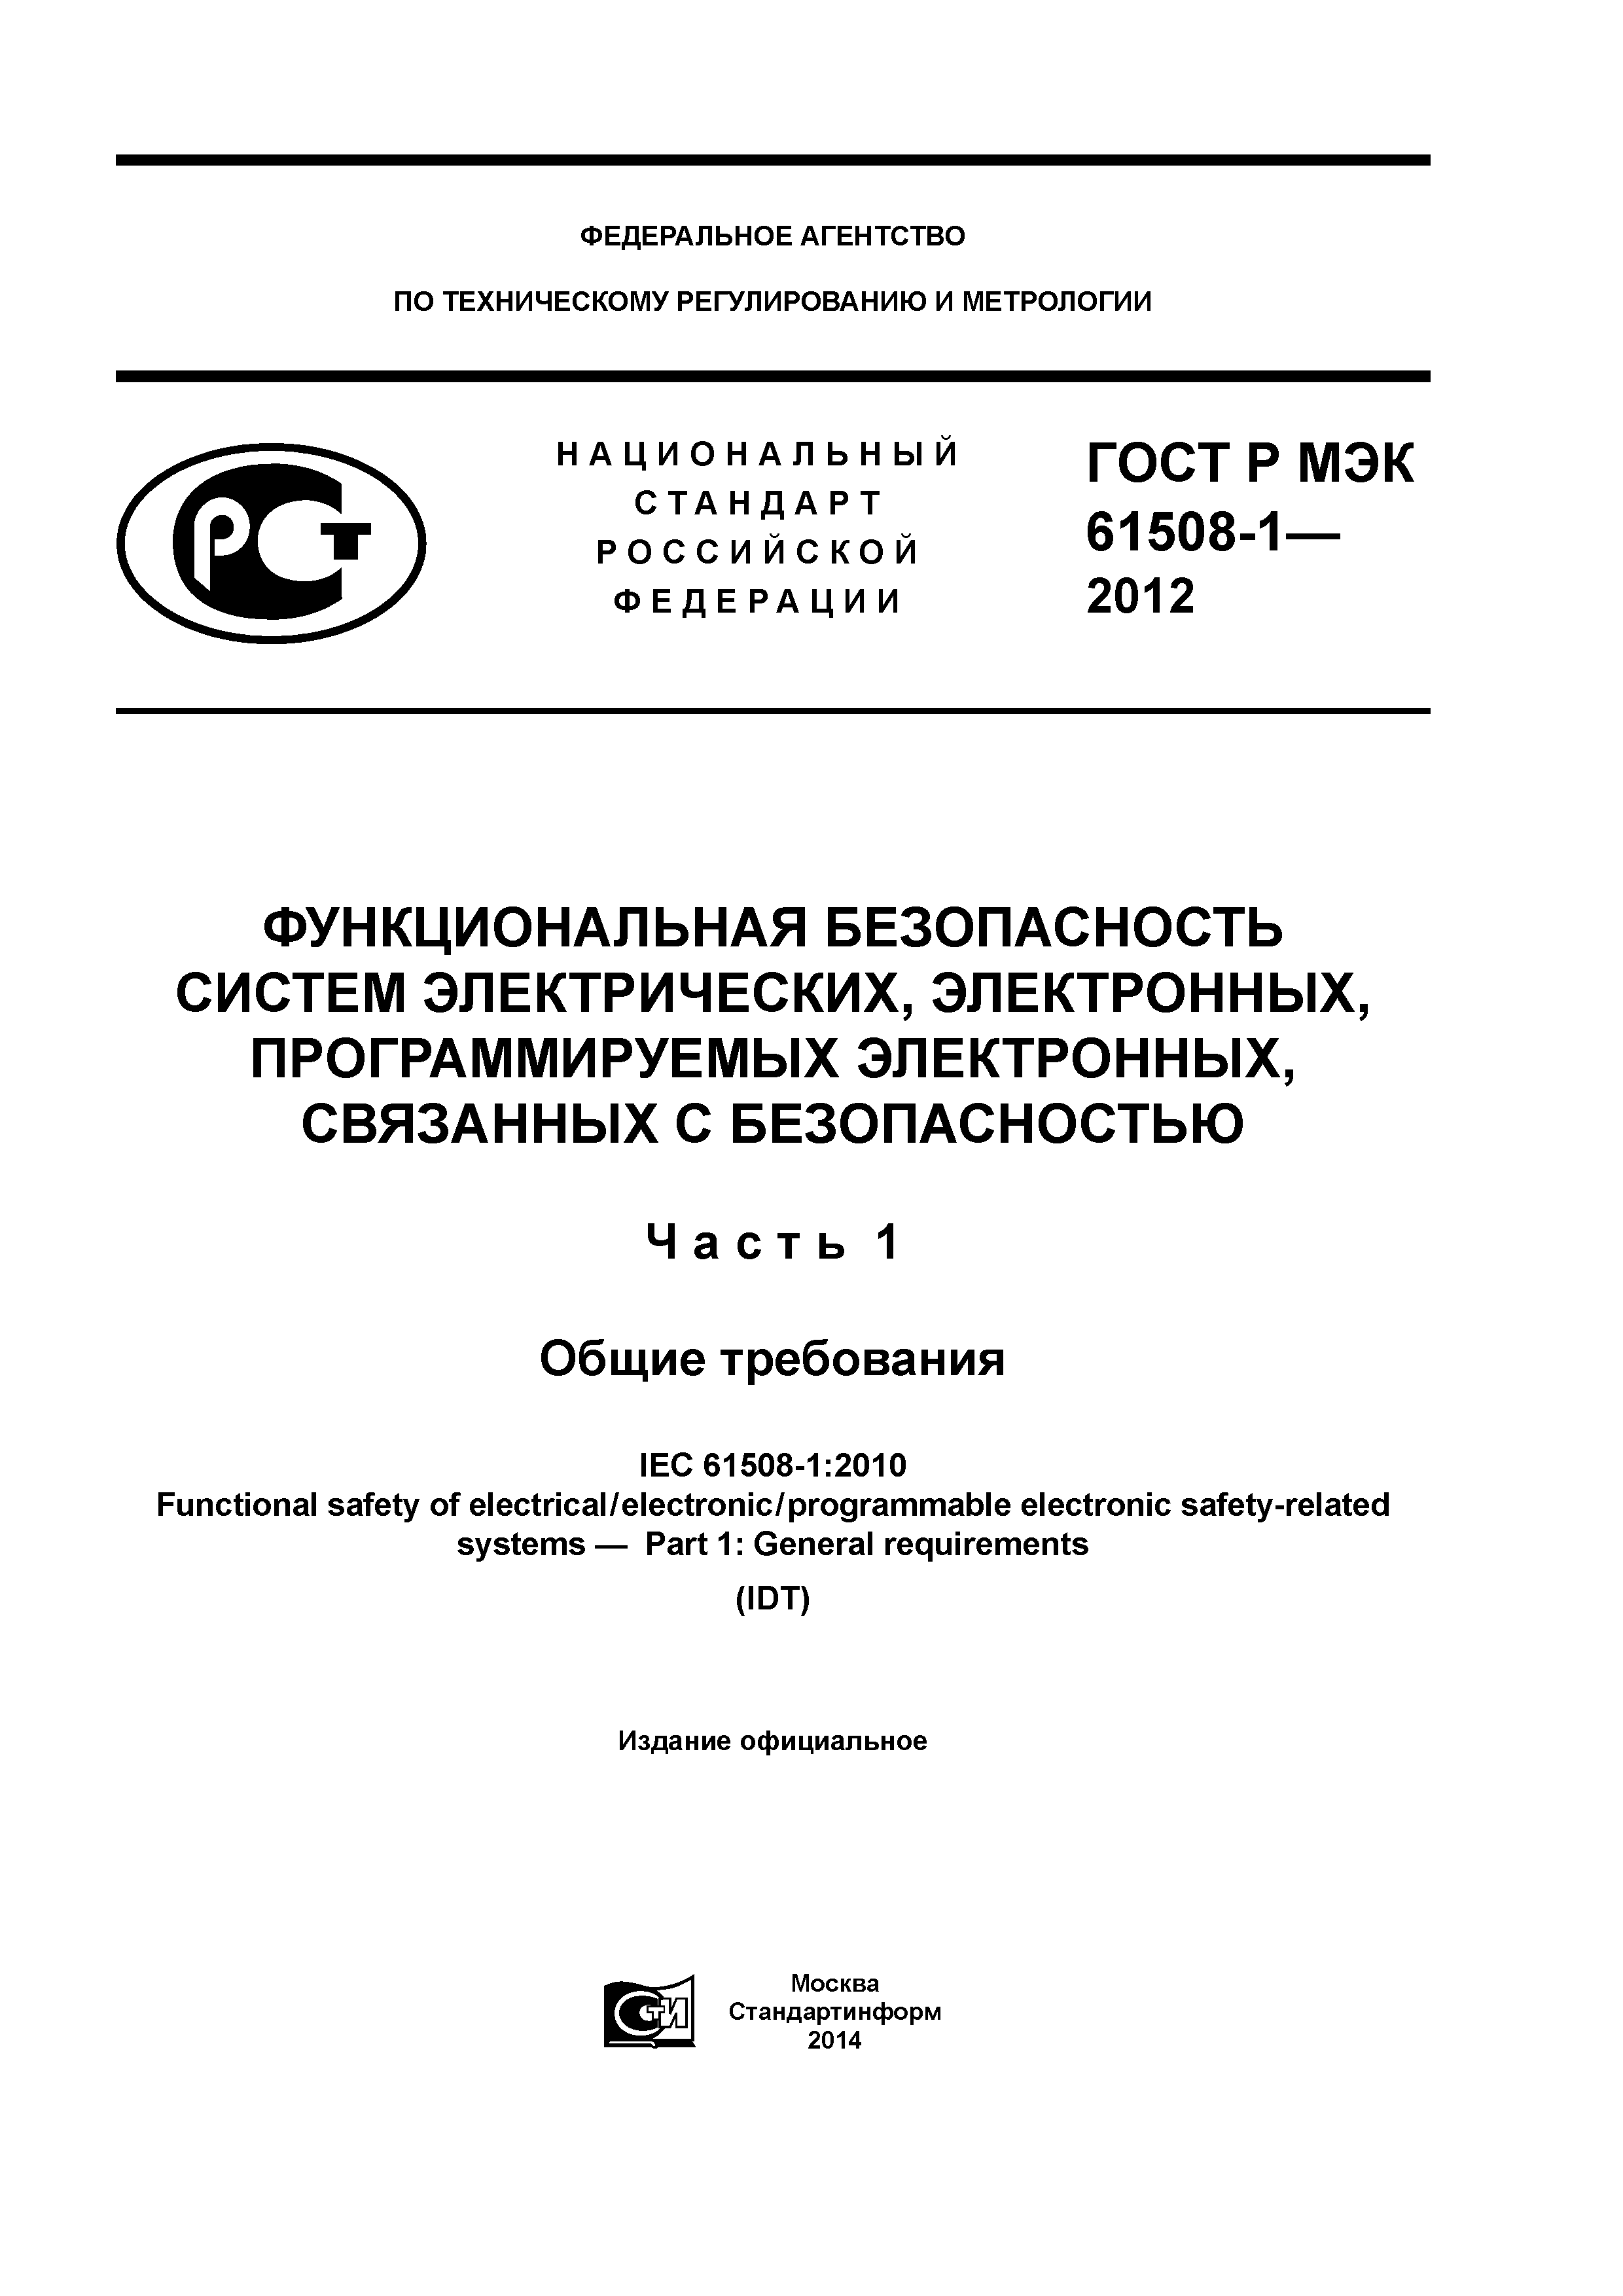 ГОСТ Р МЭК 61508-1-2012